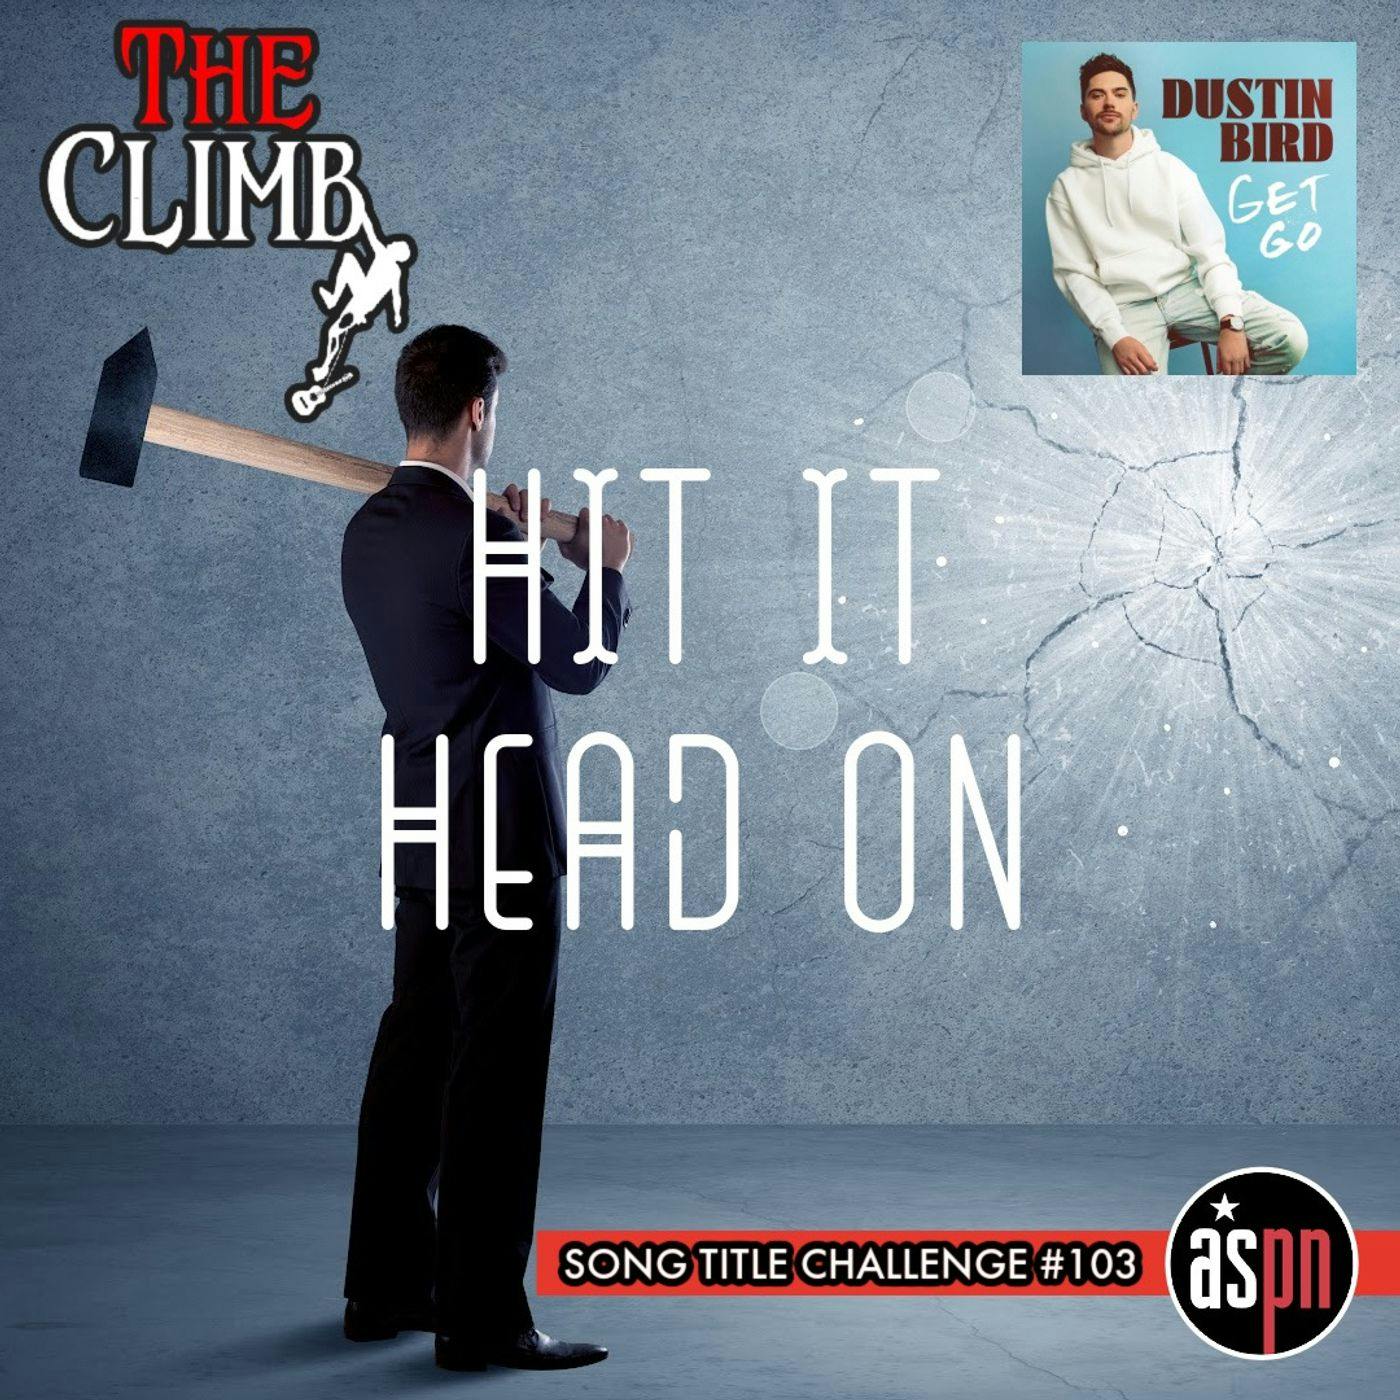 Song Title Challenge #103: Hit It Head On - Dustin Bird